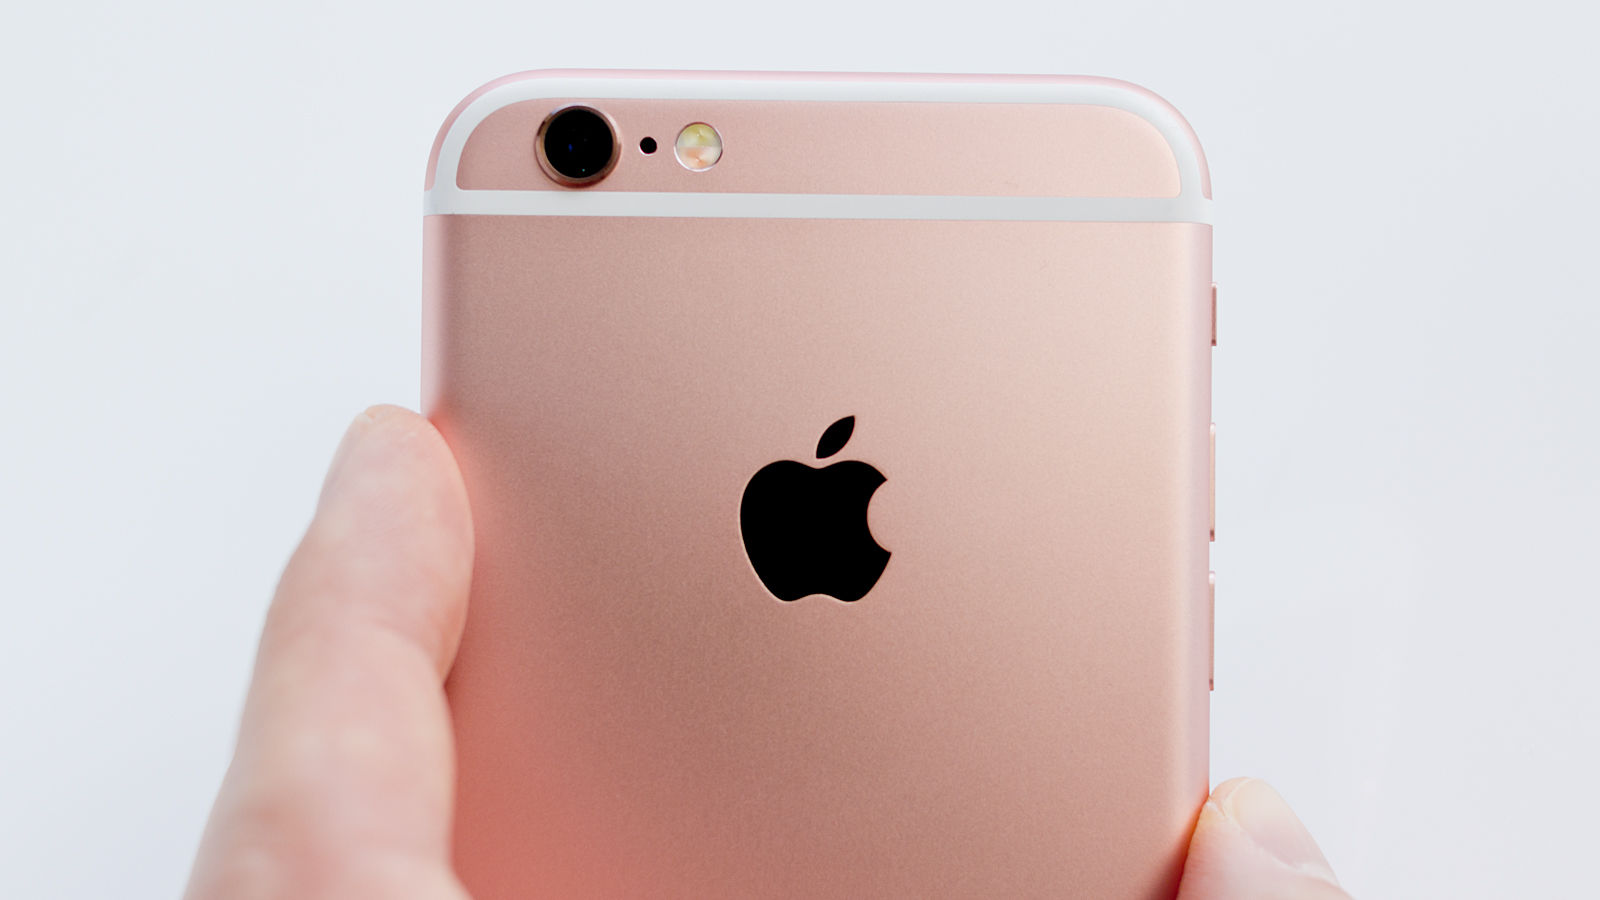 น้ำตาจะไหล iPhone 7 จะมีความจุเริ่มต้น 32GB ตัดรุ่นความจุ 16GB ออกสักที!